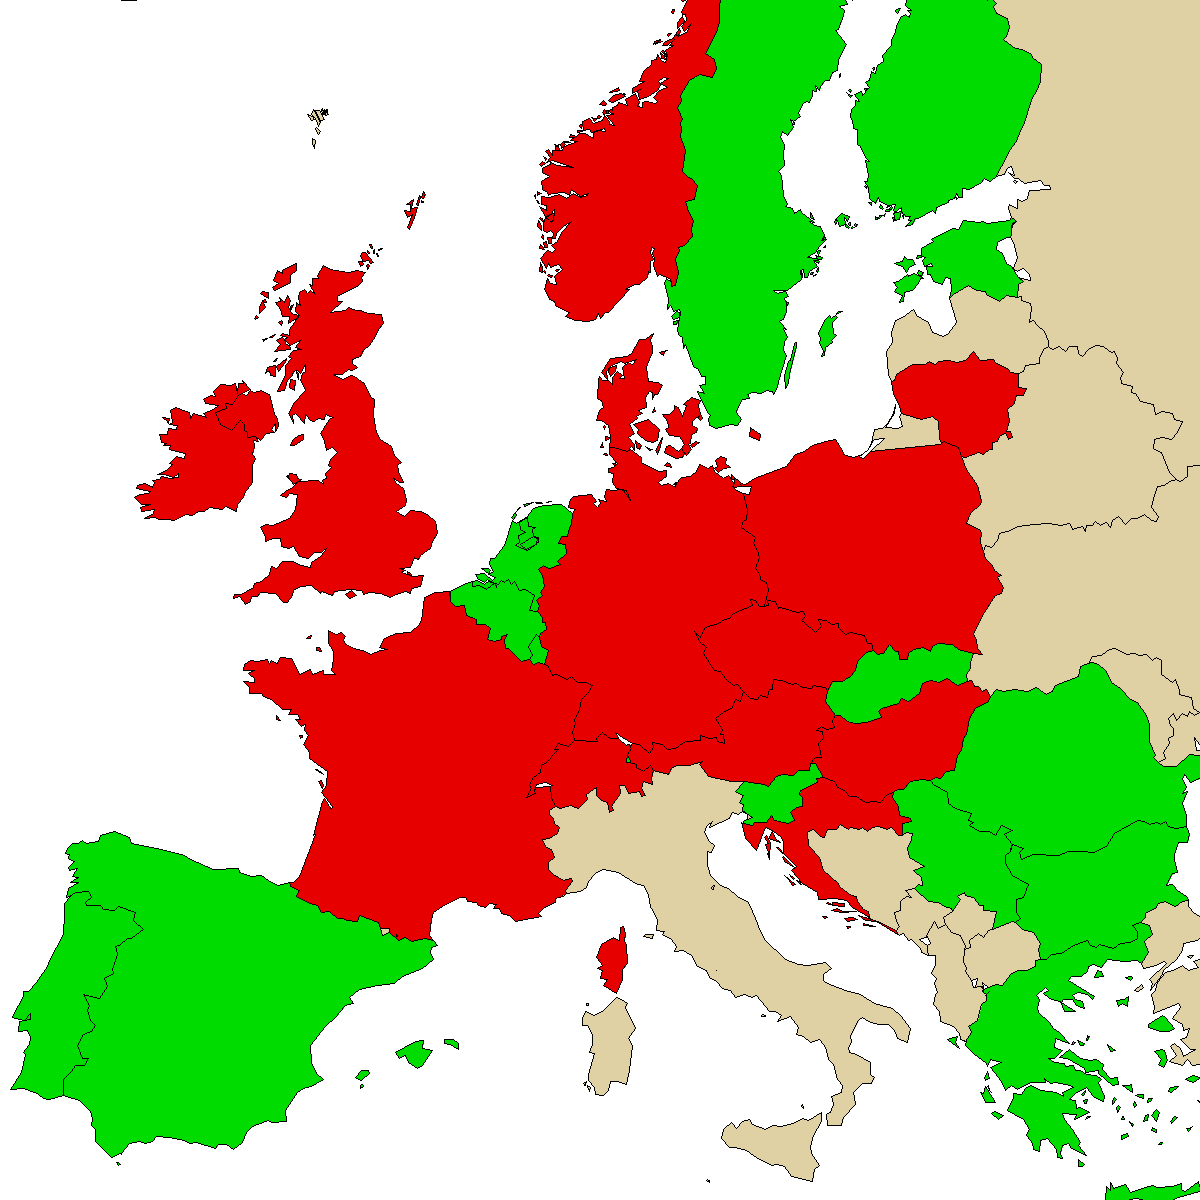 mapa de informações legais para nosso produto a-PiHP, verde são países sem proibição, vermelho com proibição, cinza é desconhecido